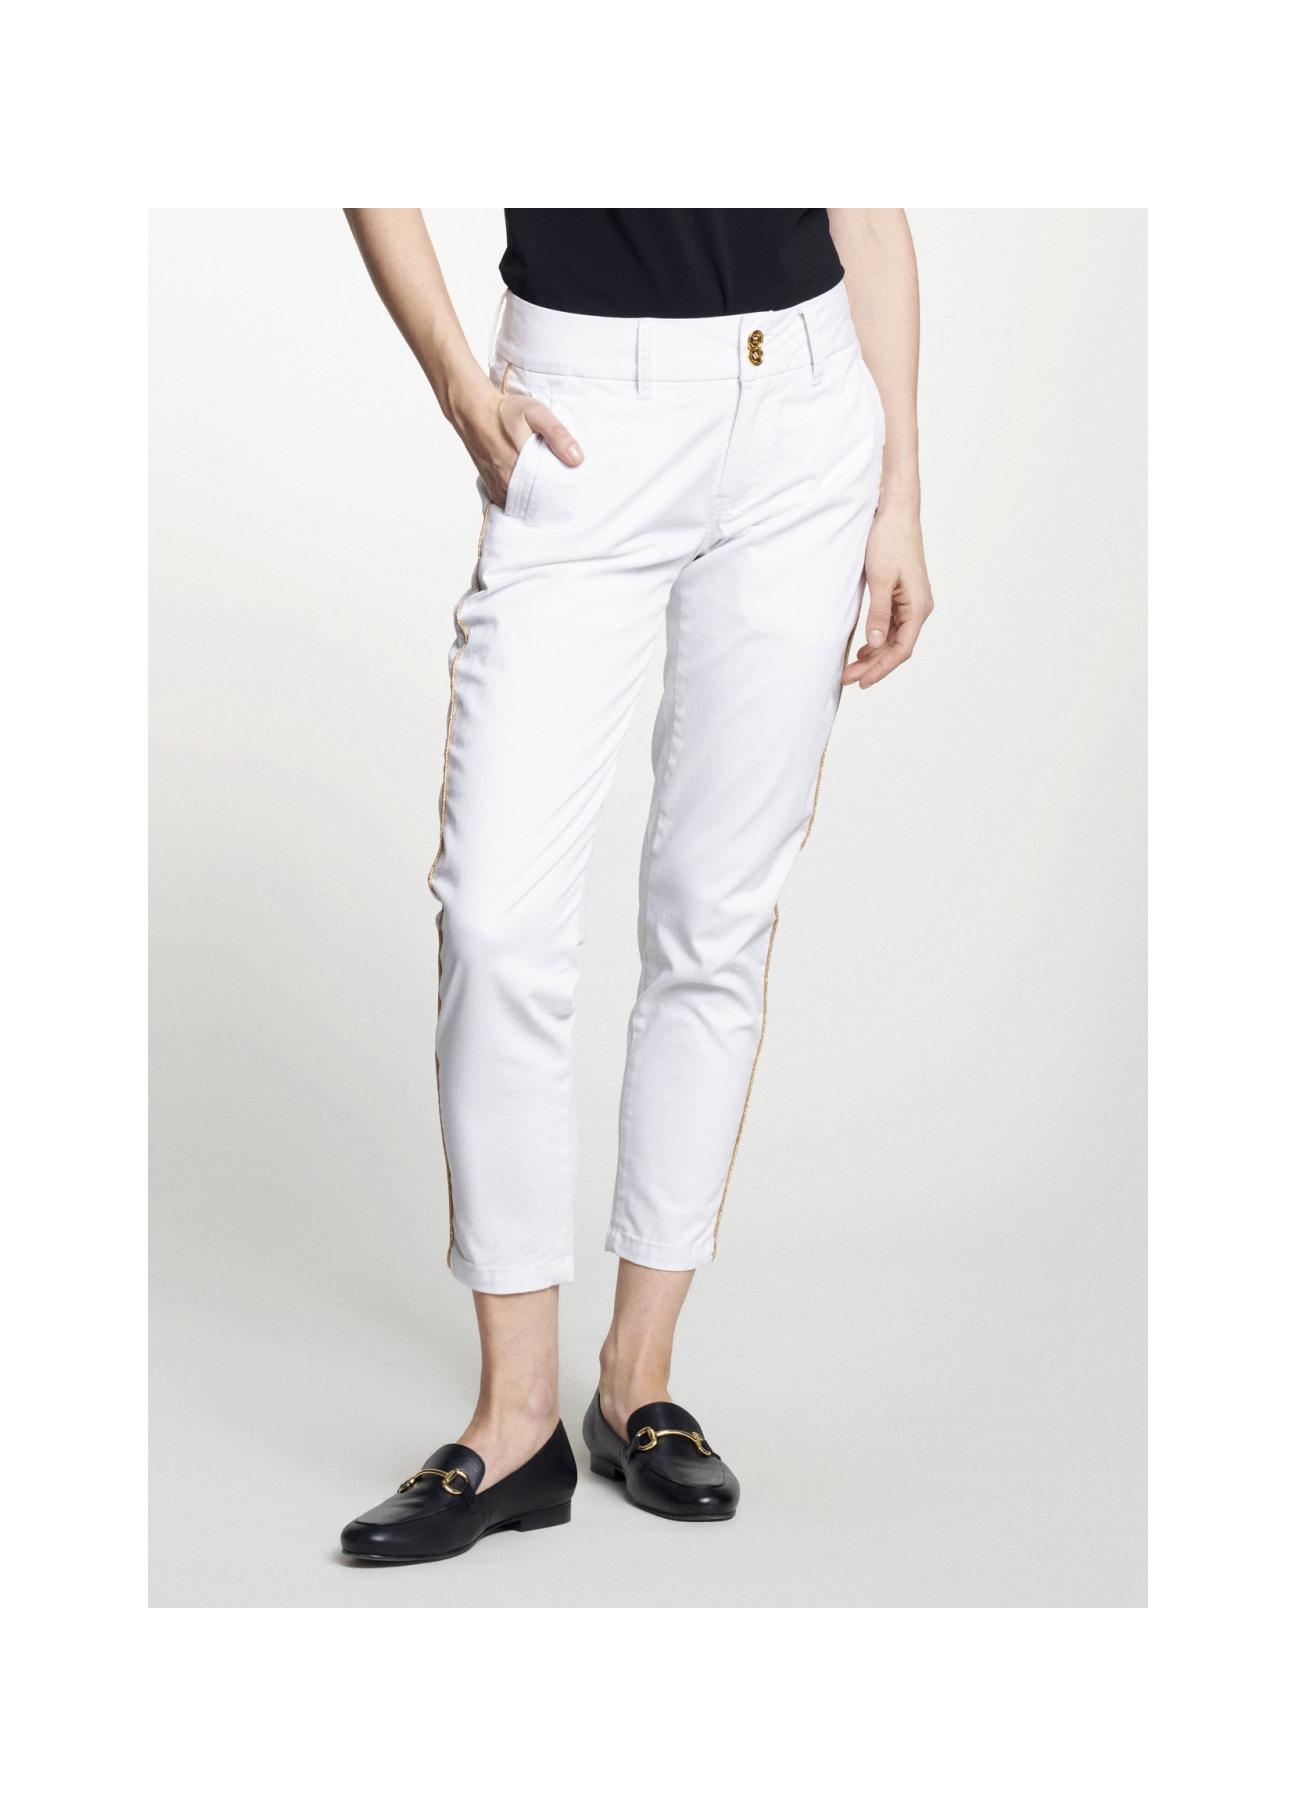 Białe spodnie damskie z lampasem SPODT-0056-11(W21)